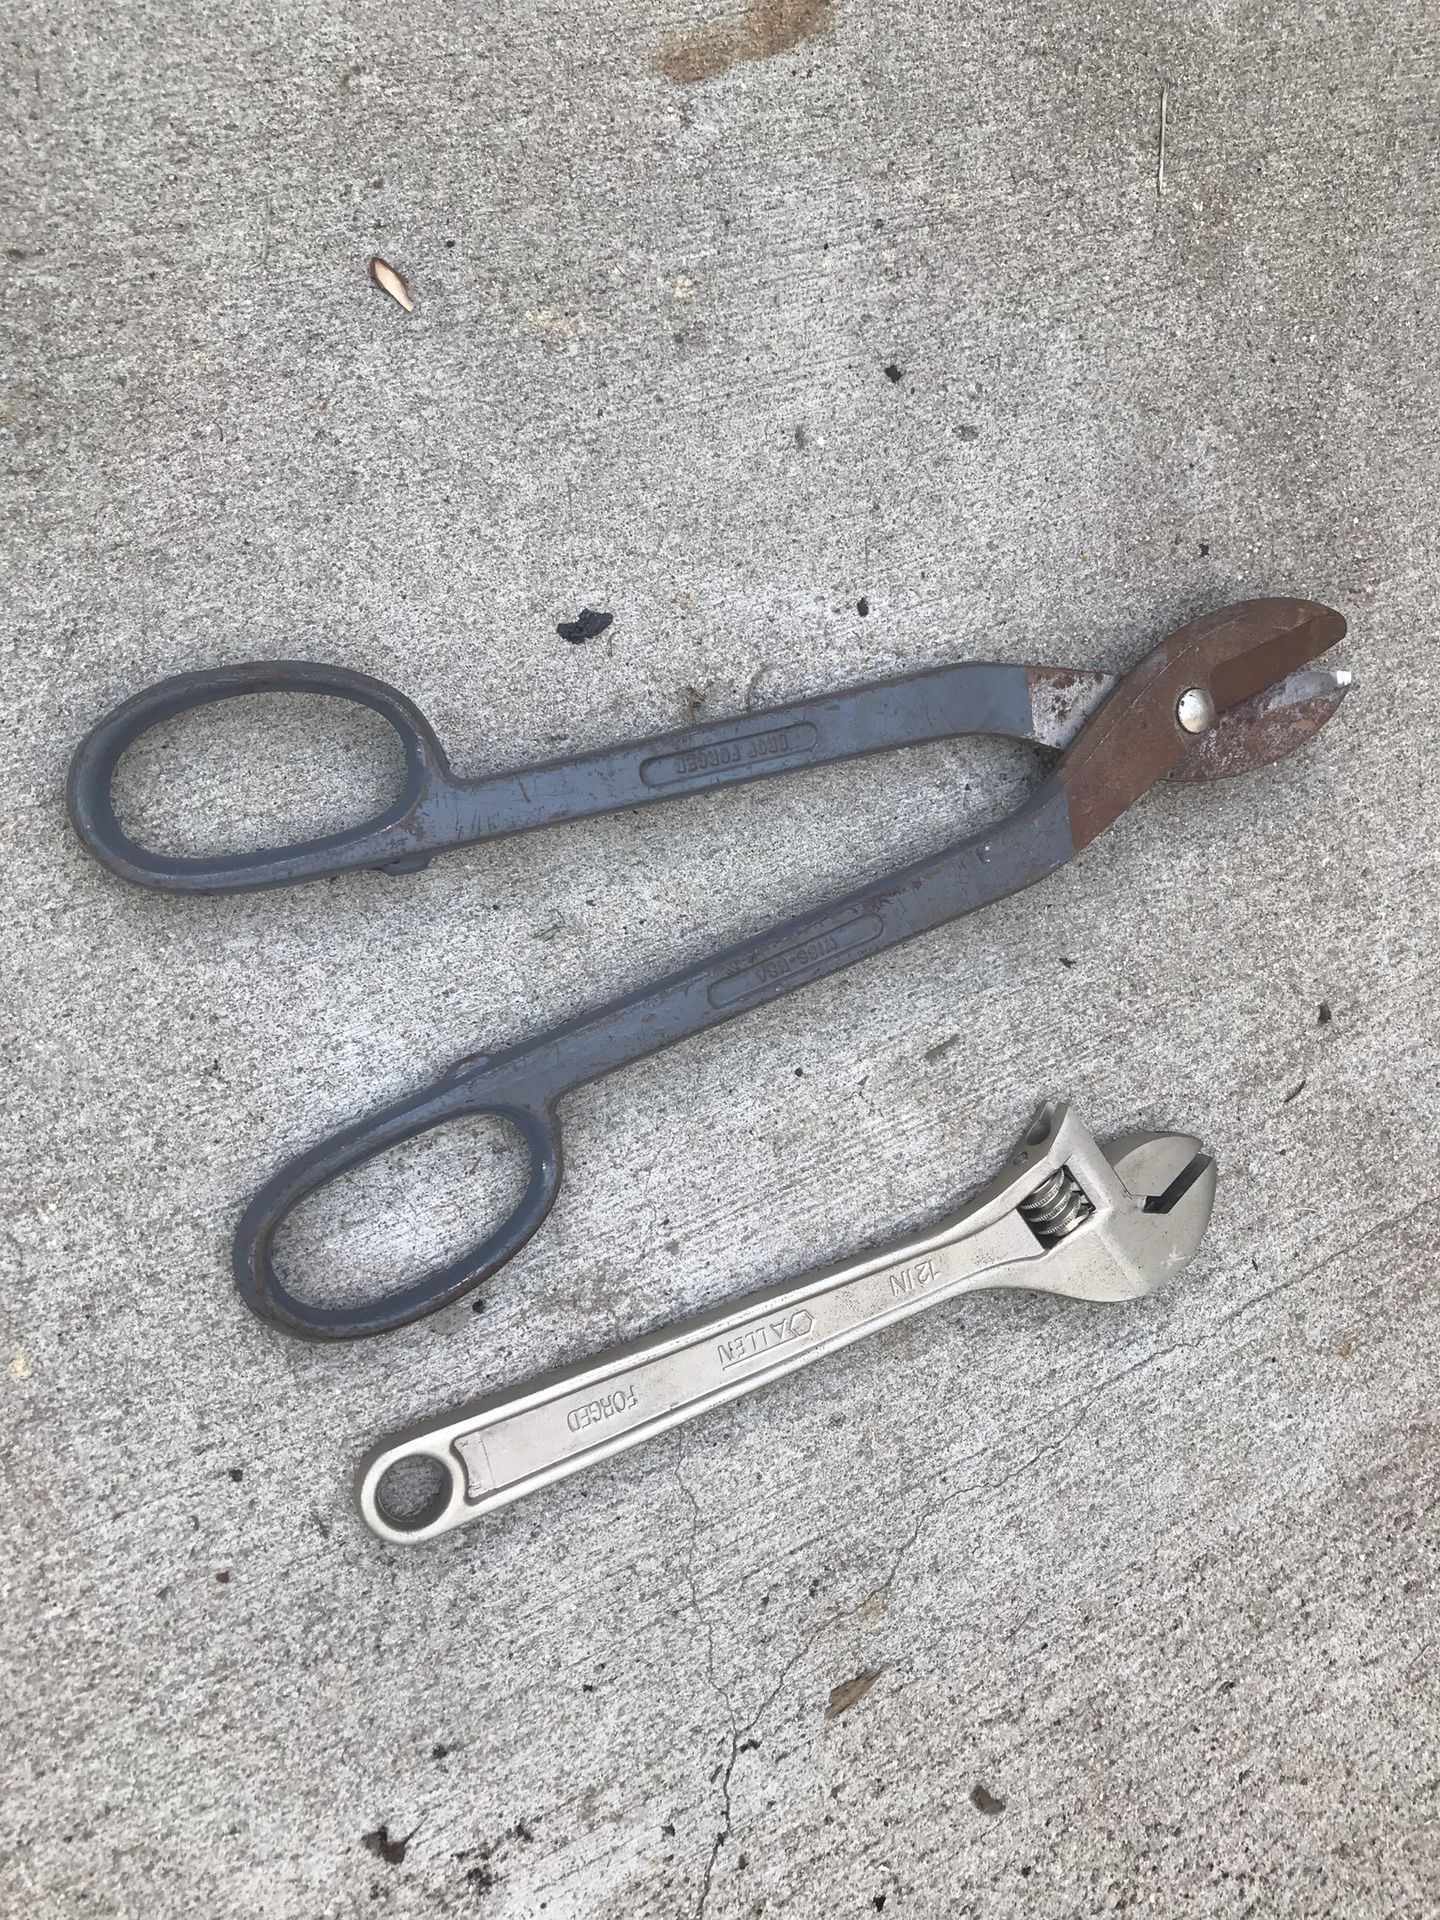 Industrial type metal shears (snips)